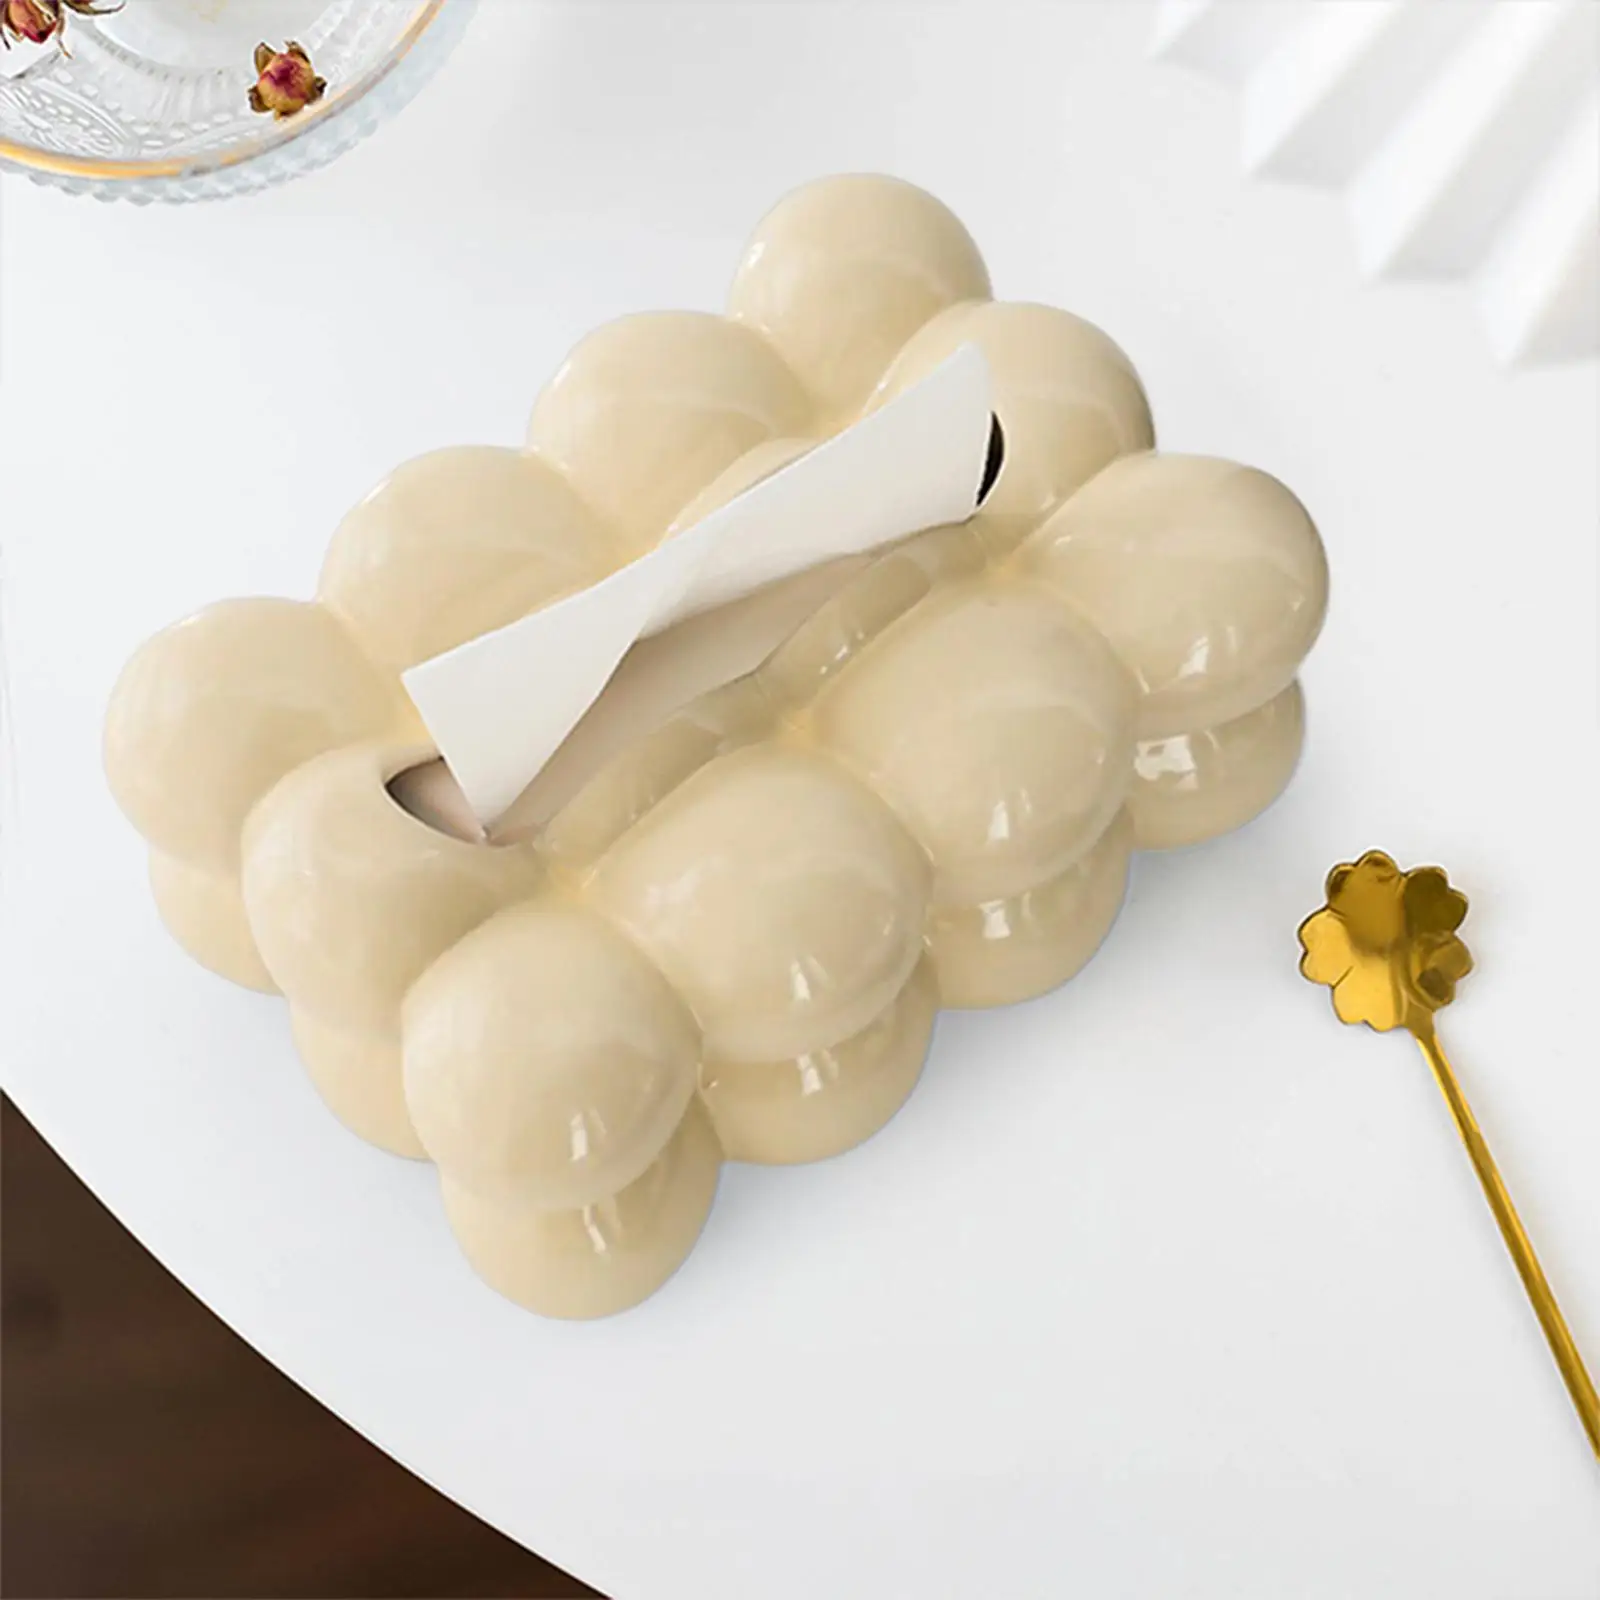 Egg Shaped Napkin Case Holder Storage Box Dispenser Ceramic Chic Tissue Box Cover for Living Room Cafe Decor